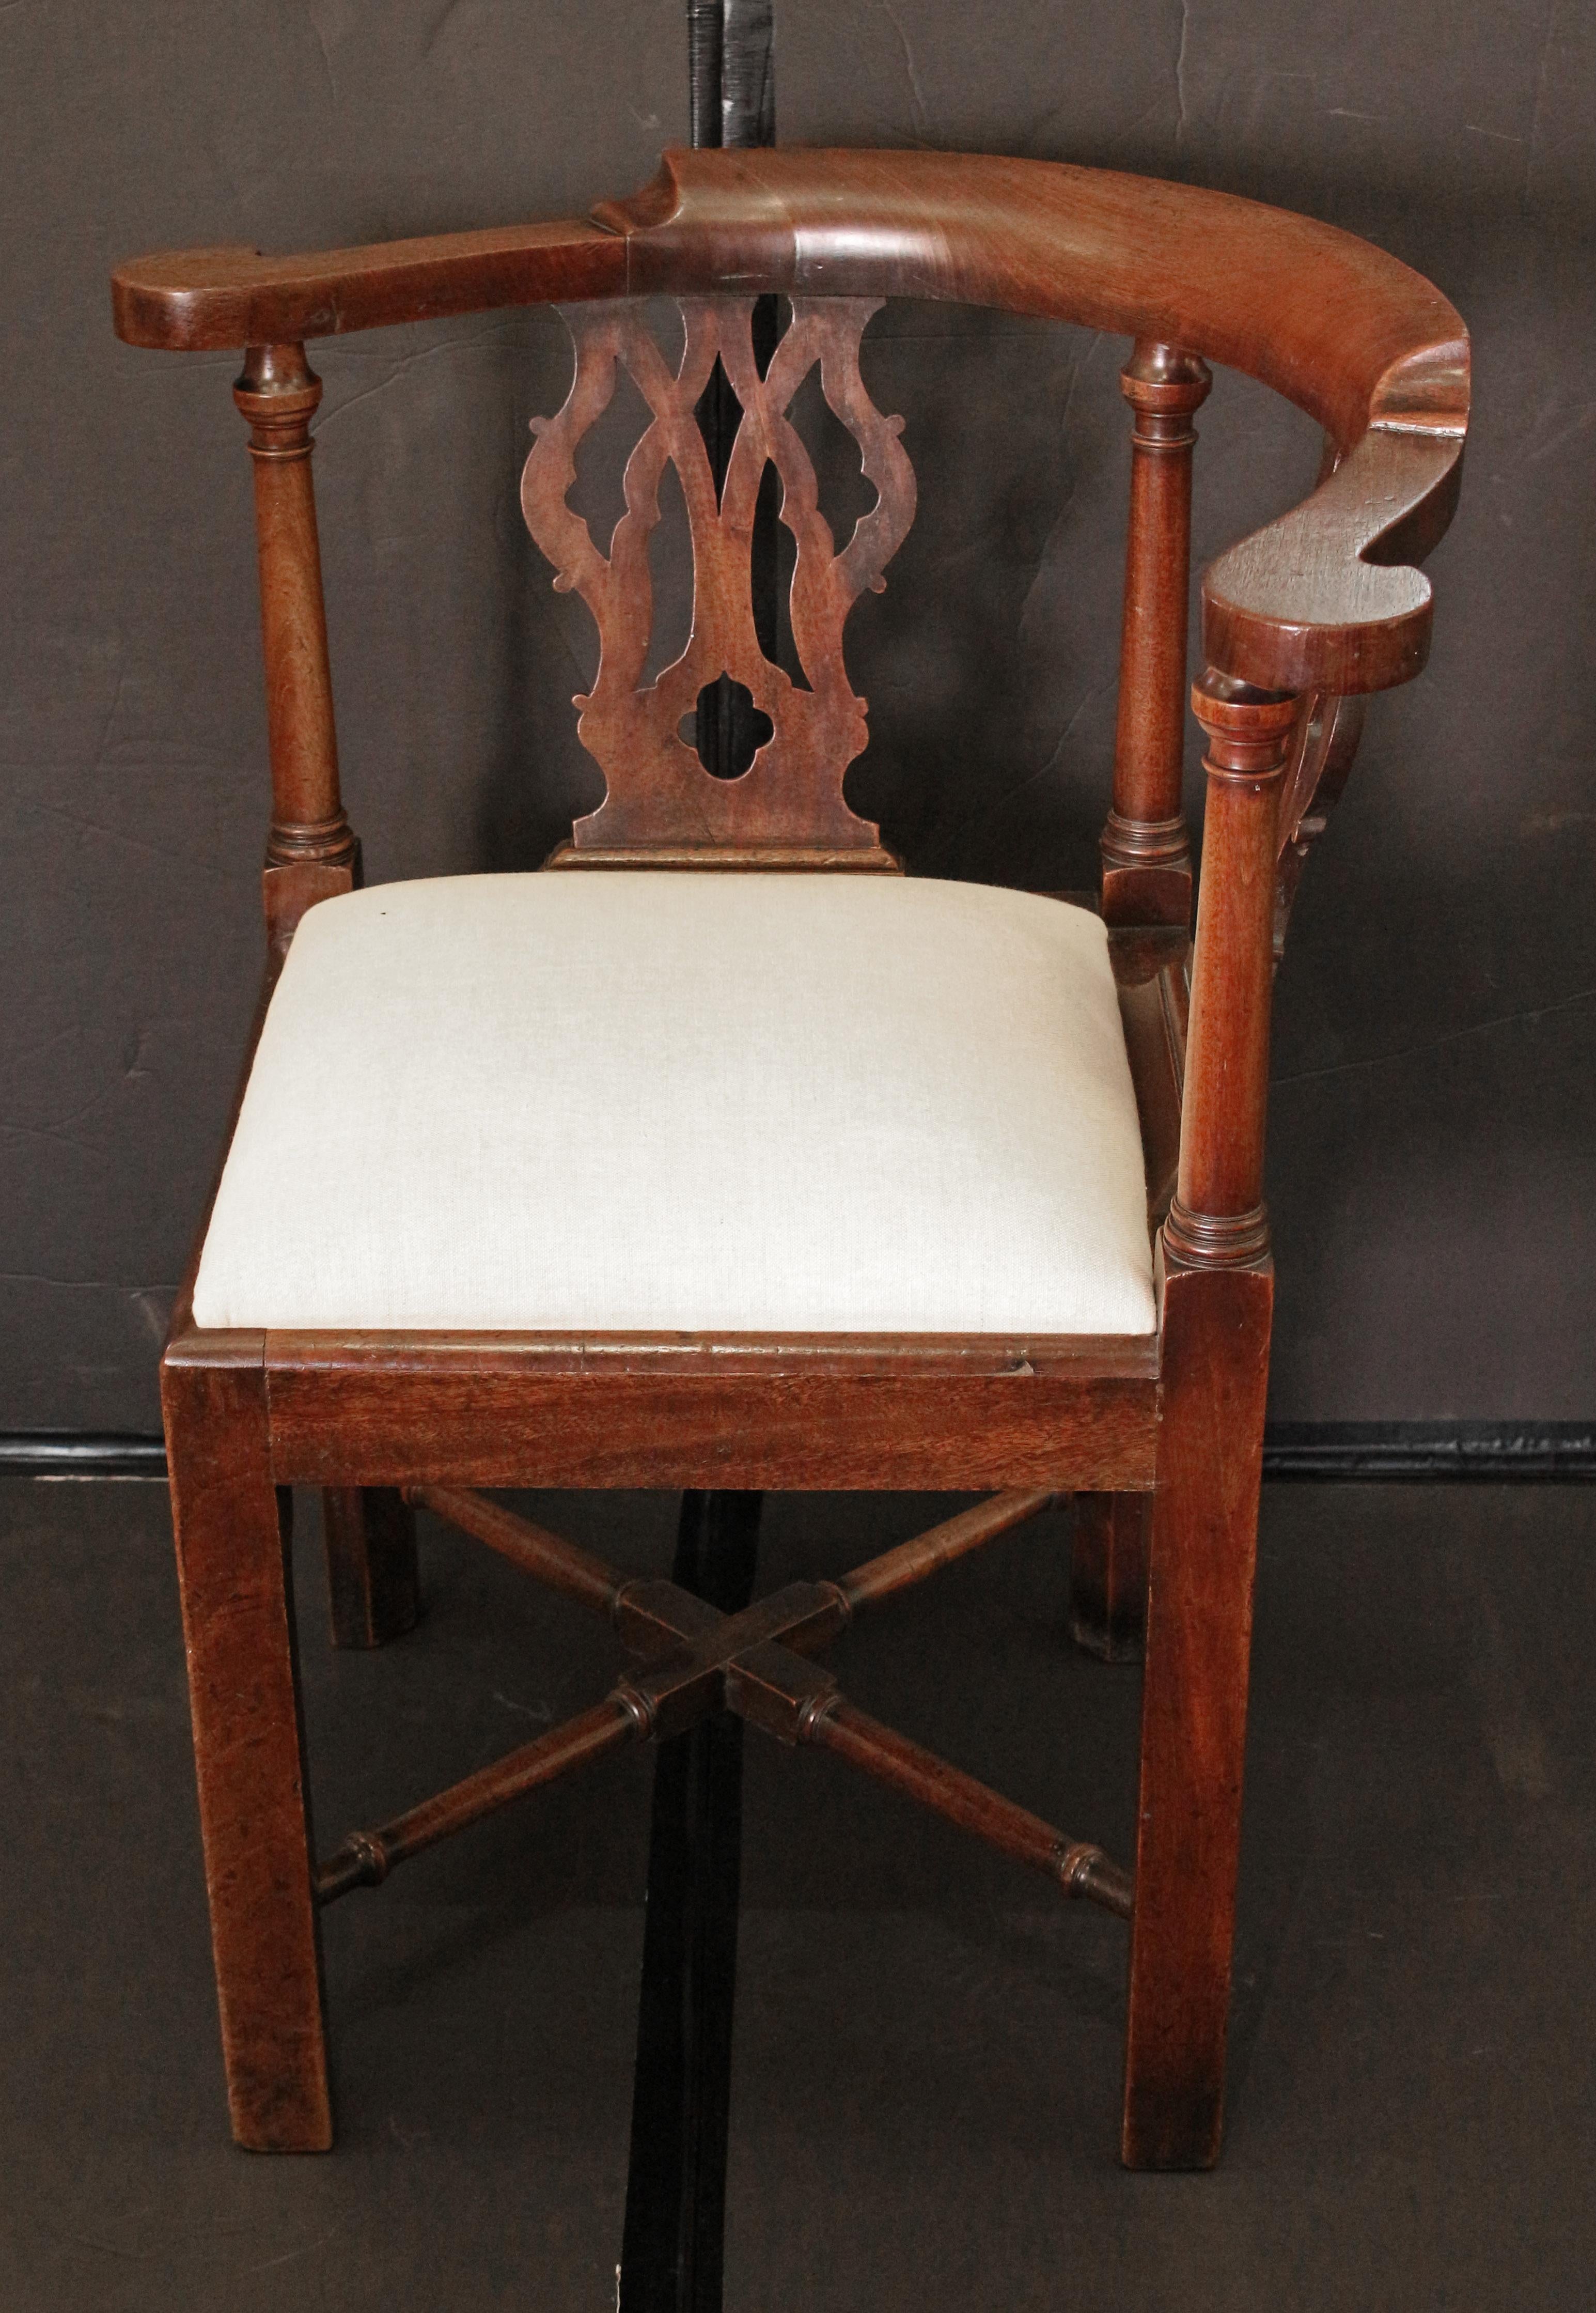 CIRCA 1760-80 Englischer Eckstuhl aus der Zeit Georgs III. Mahagoni von guter Farbe. Einst mit tiefen Schürzen versehen, um wahrscheinlich einen Nachttopf zu verbergen, jetzt neu verstrebt und mit Slip-Sitz. Ringgeschnitzte, gedrechselte Kreuztrage